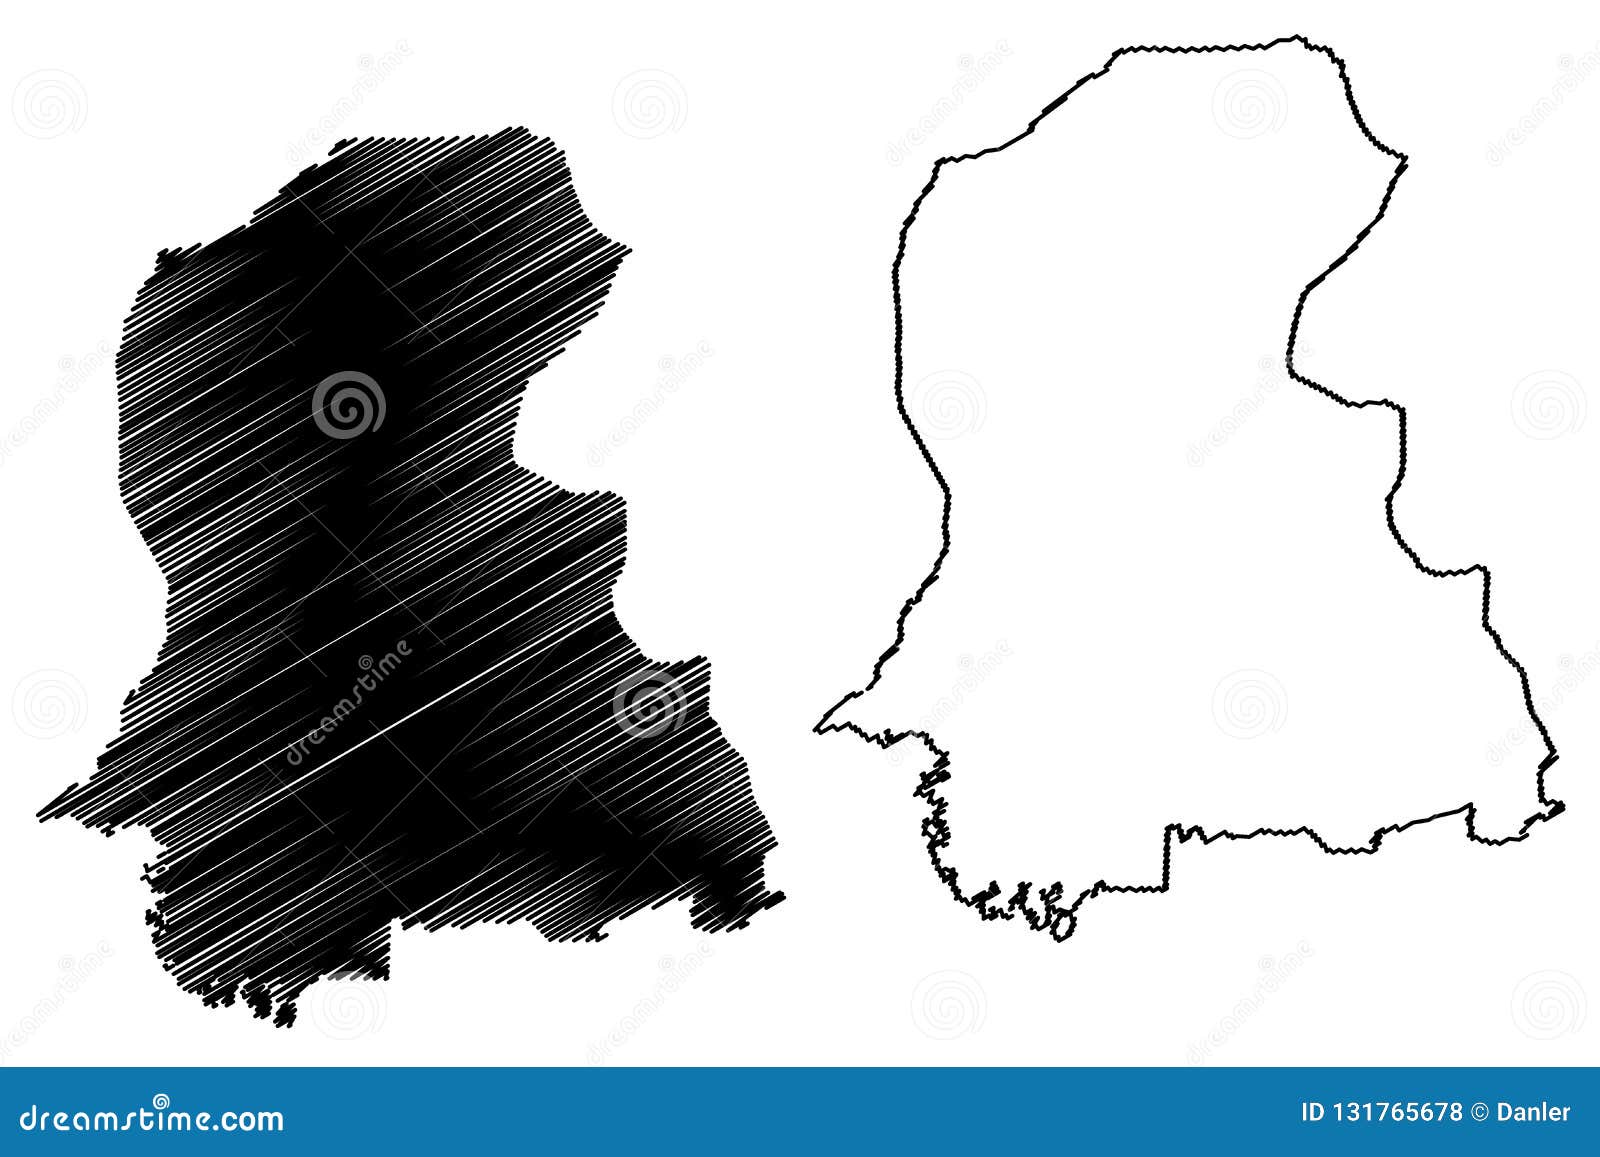 Sindh Map Vector | CartoonDealer.com #130610553